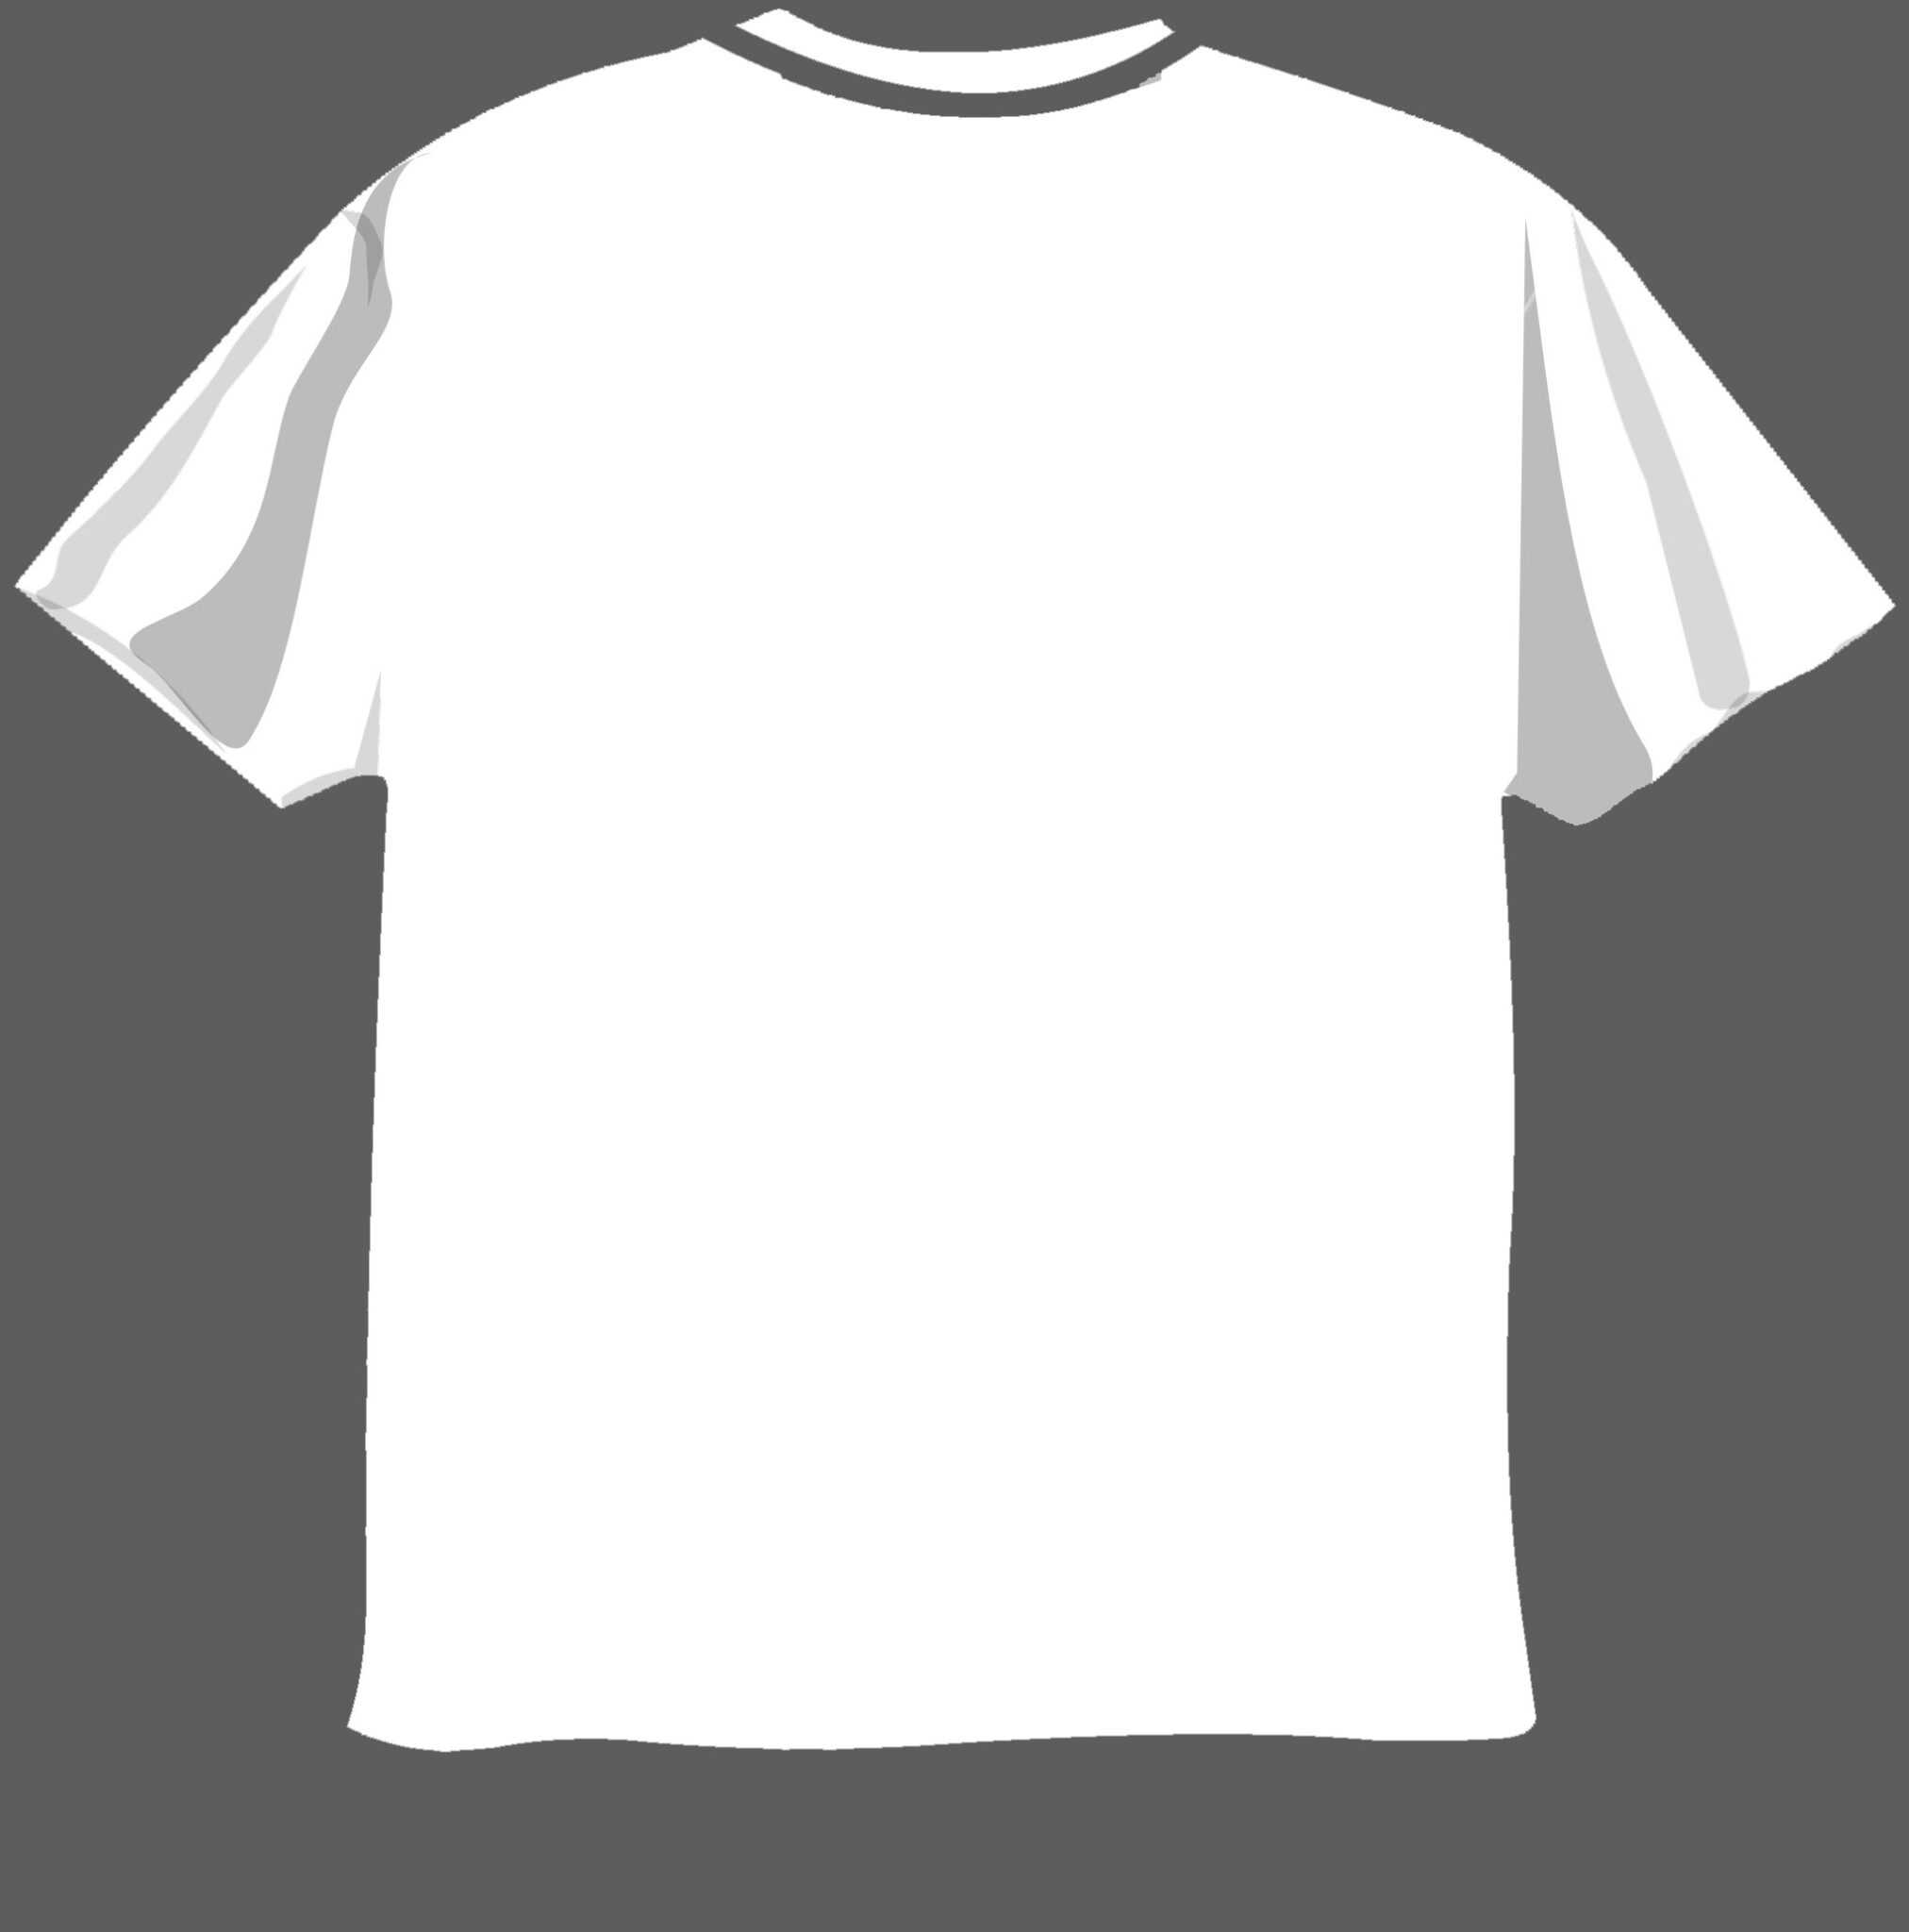 blank-t-shirt-design-template-psd